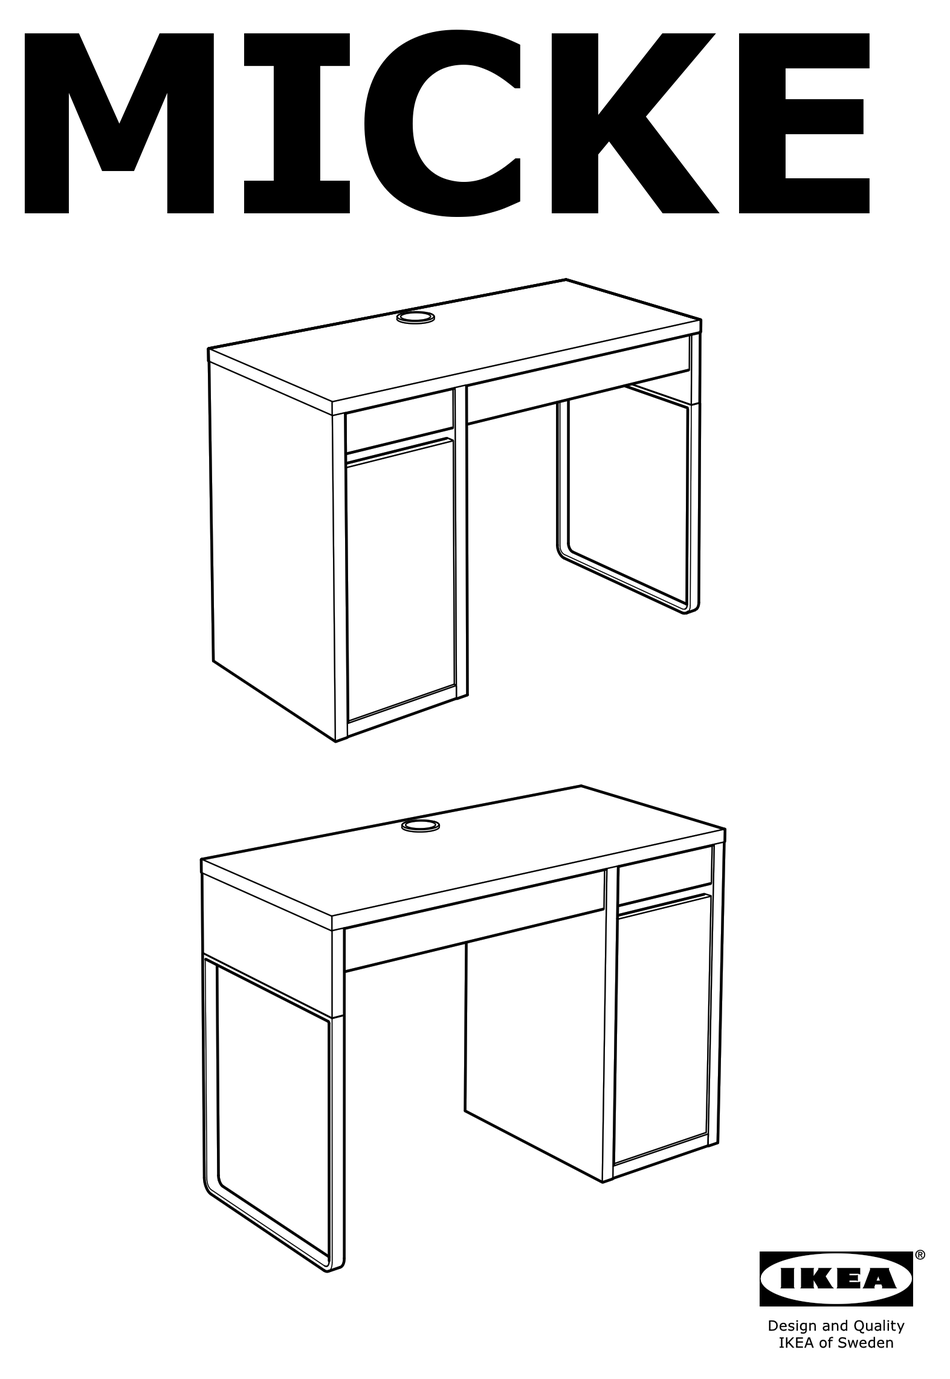 Стол икеа сборка. Ikea Micke письменный стол схема сборки. Стол Micke ikea сборка. Схема сборки стола икеа Micke. Схема сборки стола микке икеа.